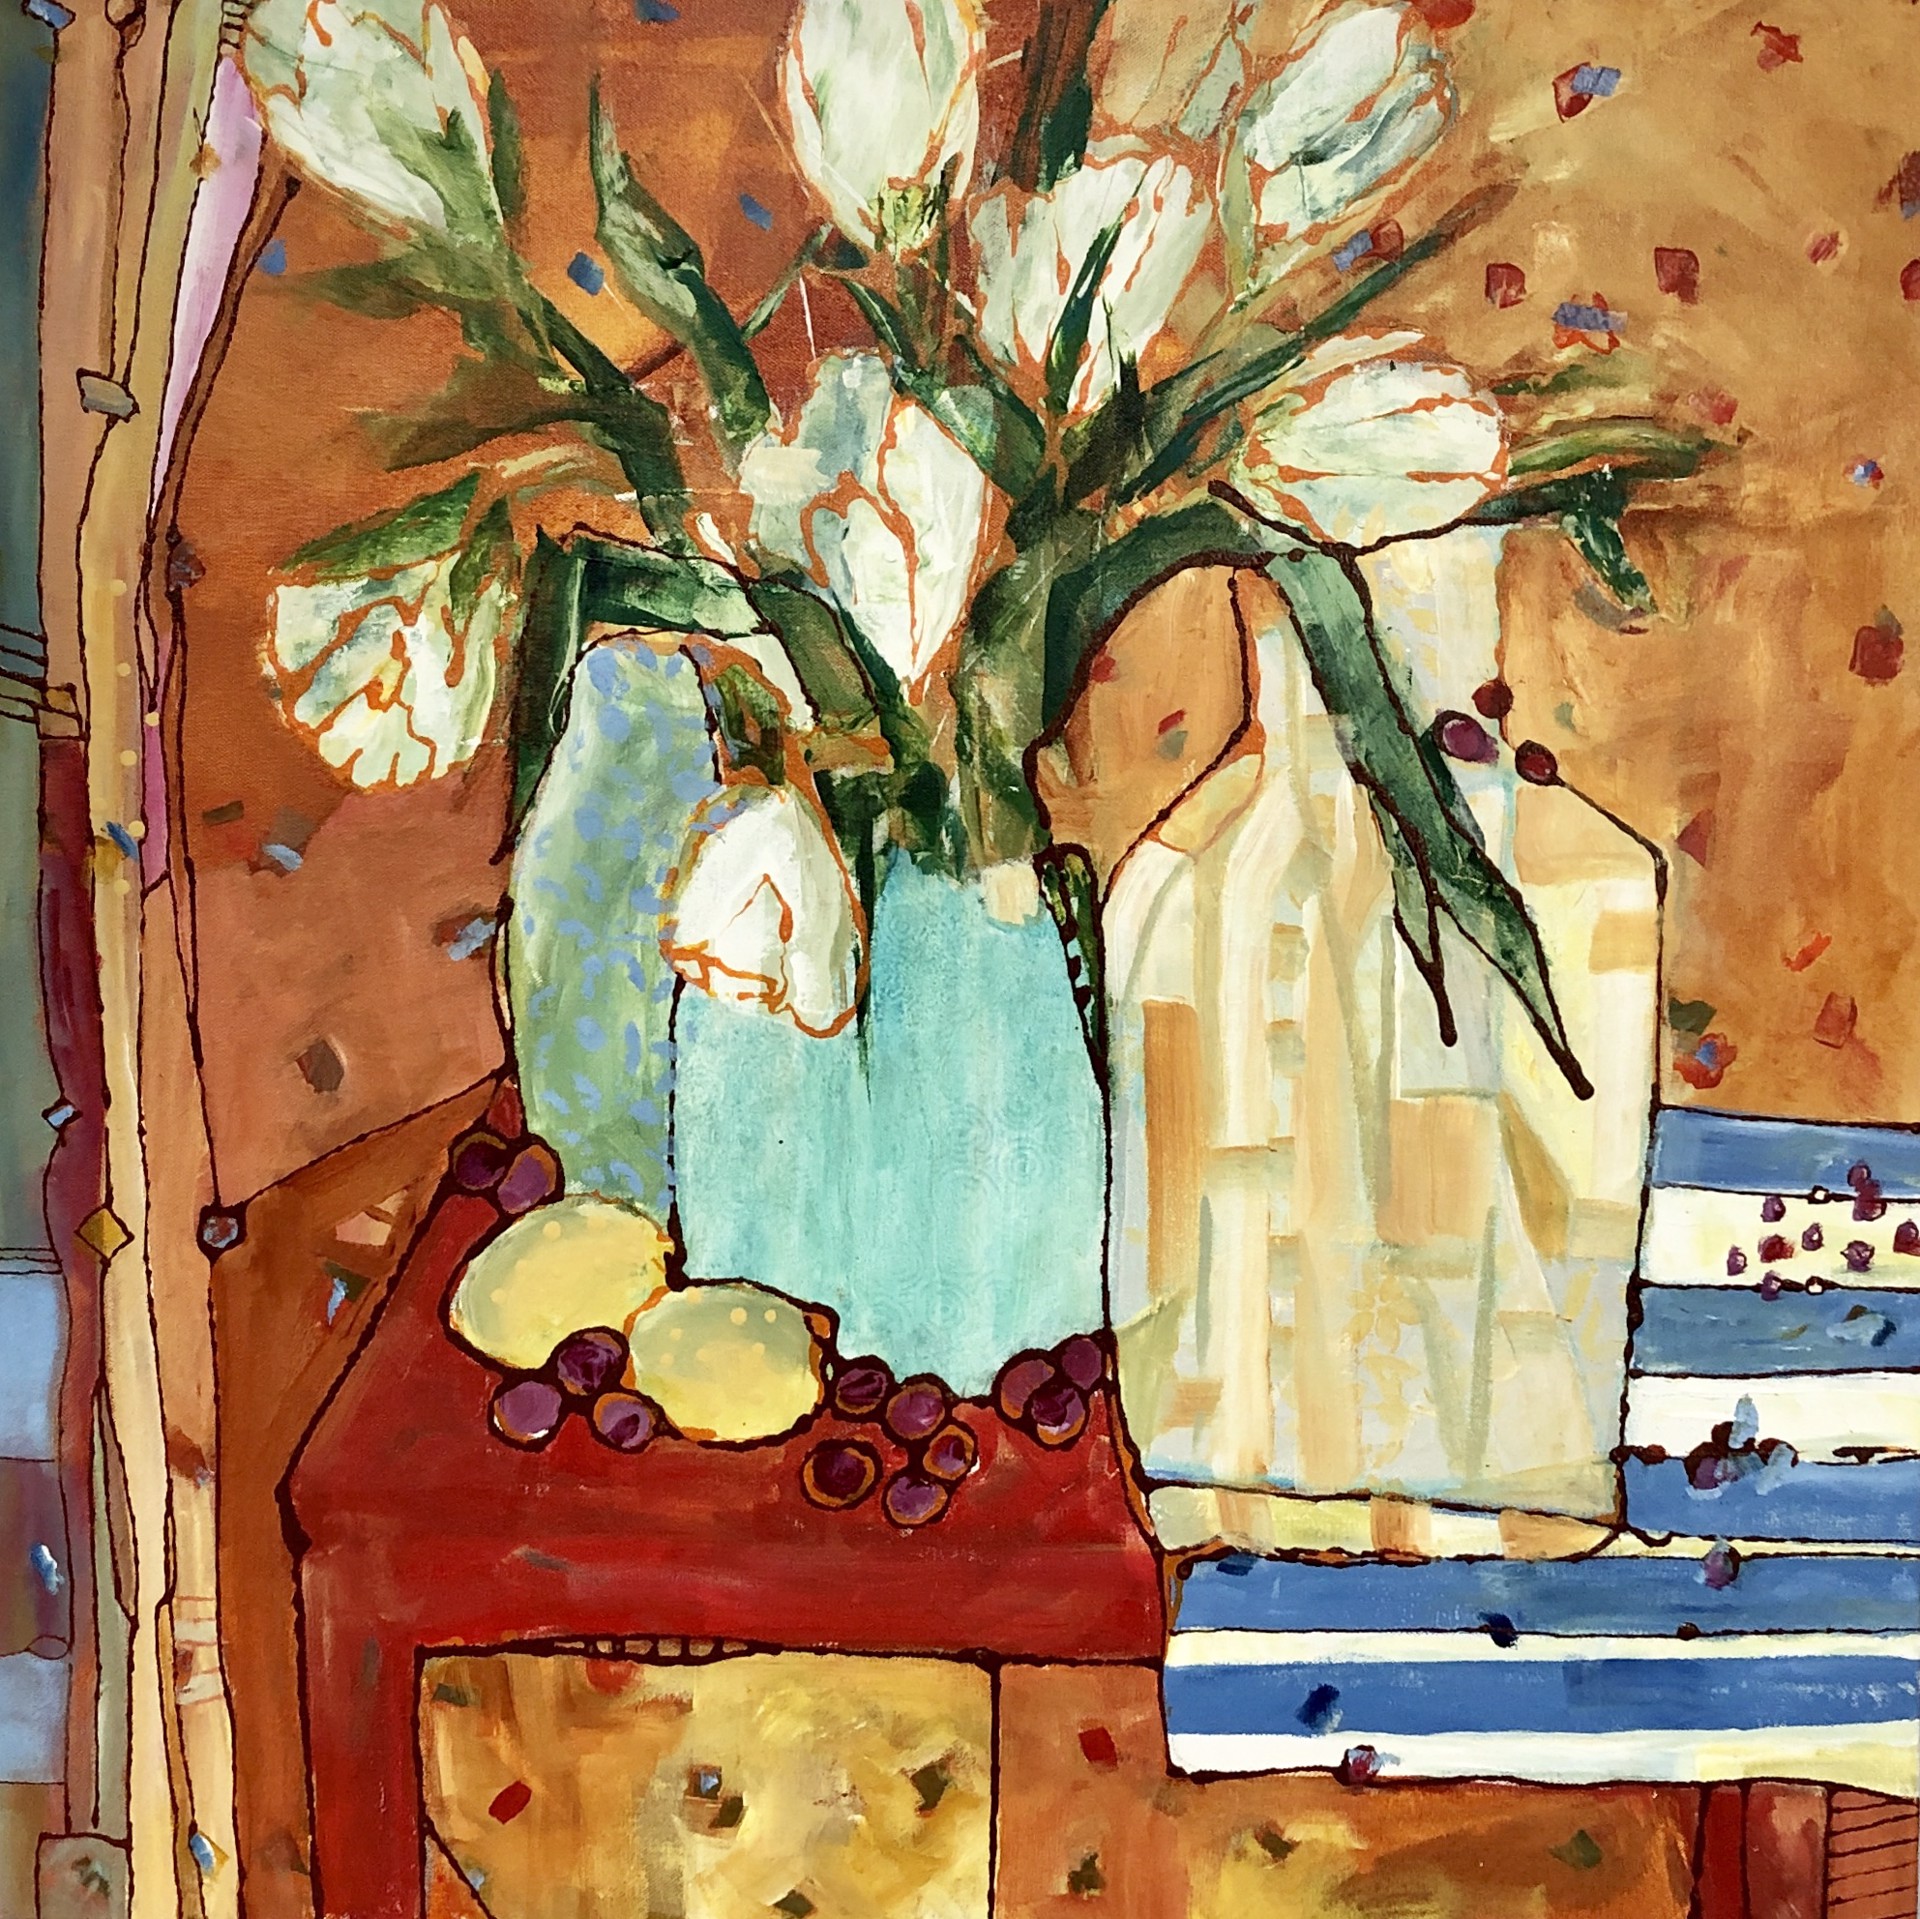 Lemons & Grapes by Jill Krasner